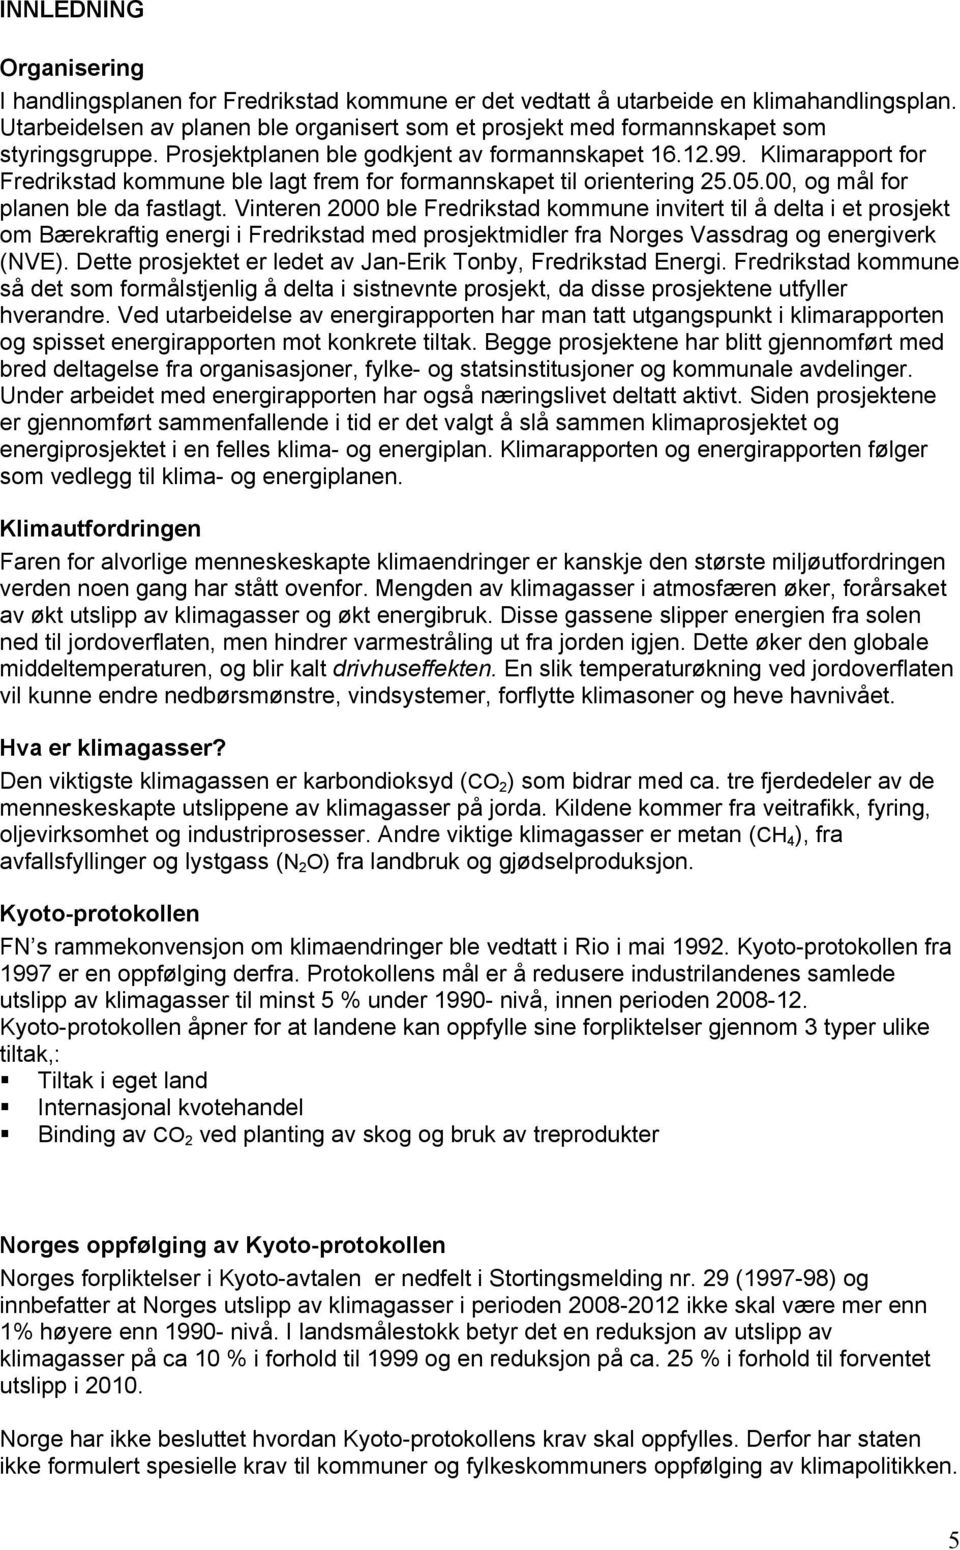 Klimarapport for Fredrikstad kommune ble lagt frem for formannskapet til orientering 25.05.00, og mål for planen ble da fastlagt.